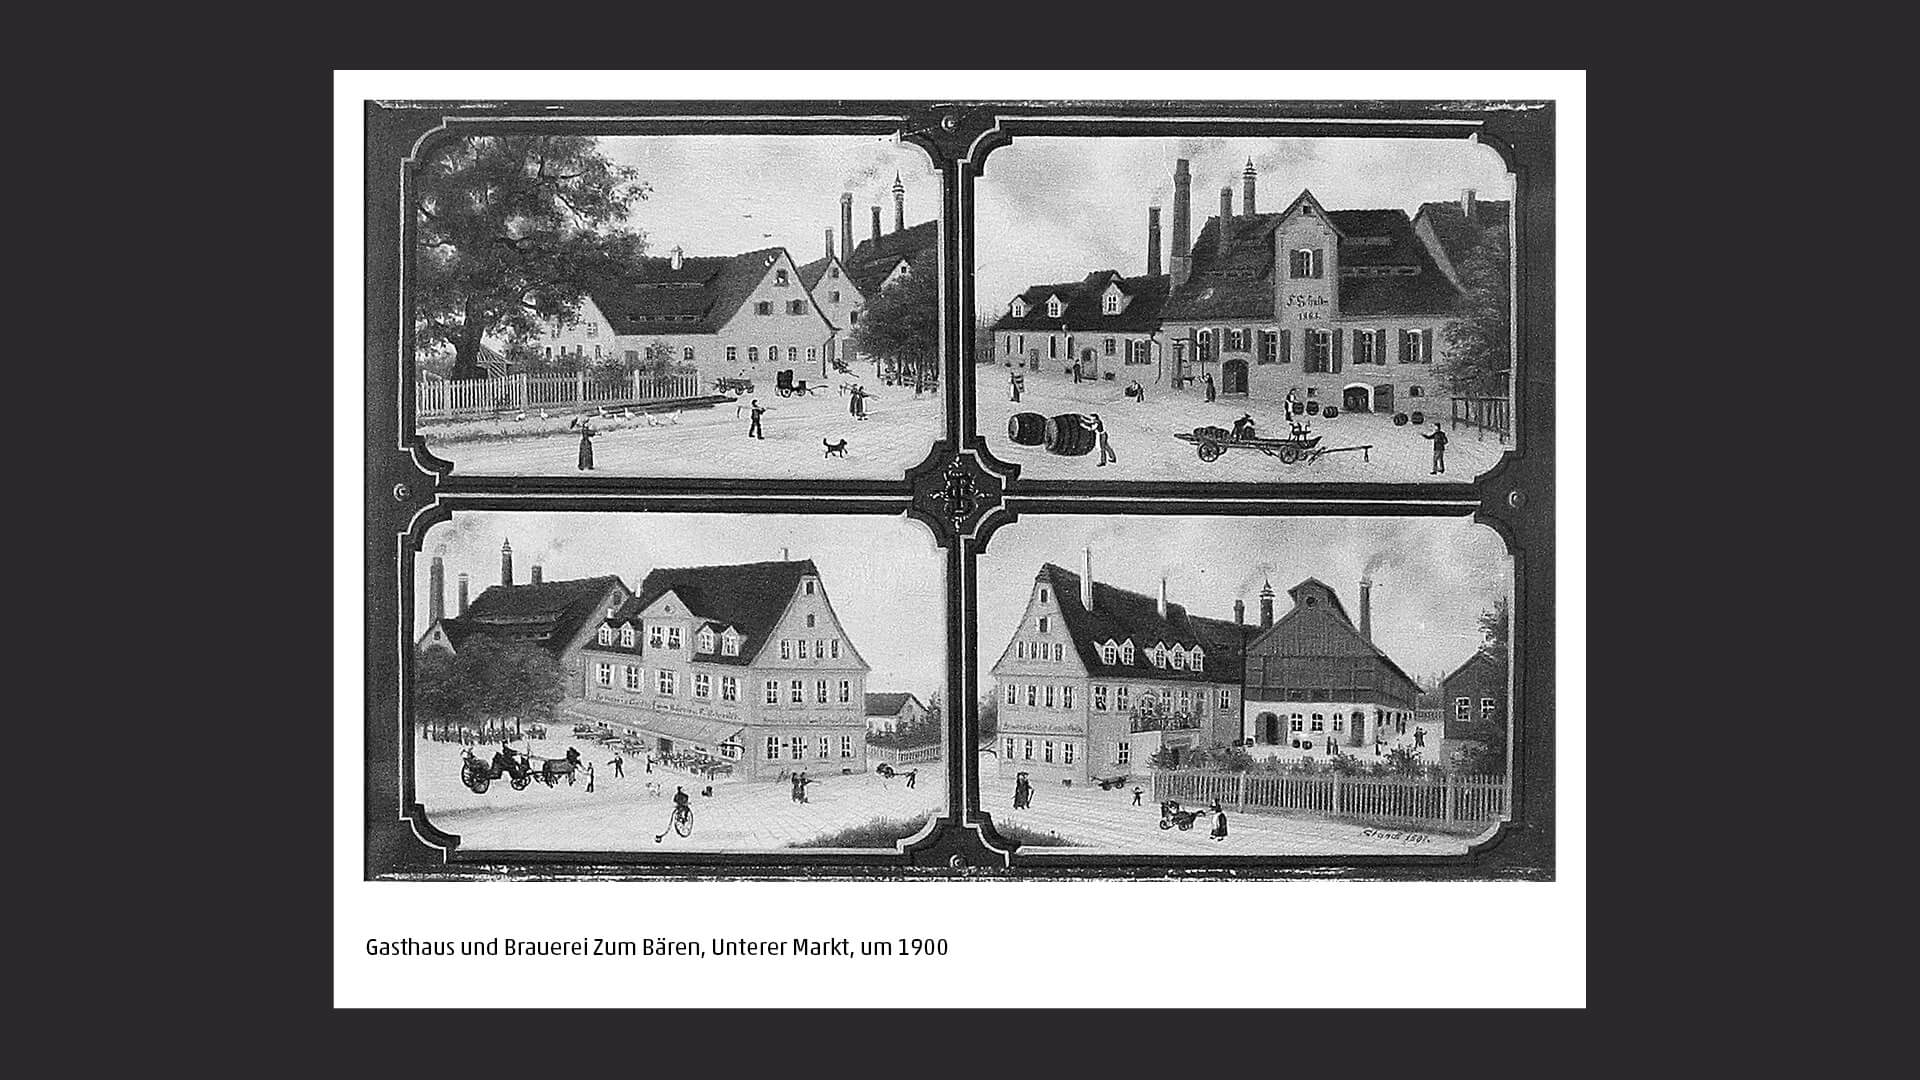 Gasthaus und Brauerein Zum Bären, Unterer Markt, um 1900